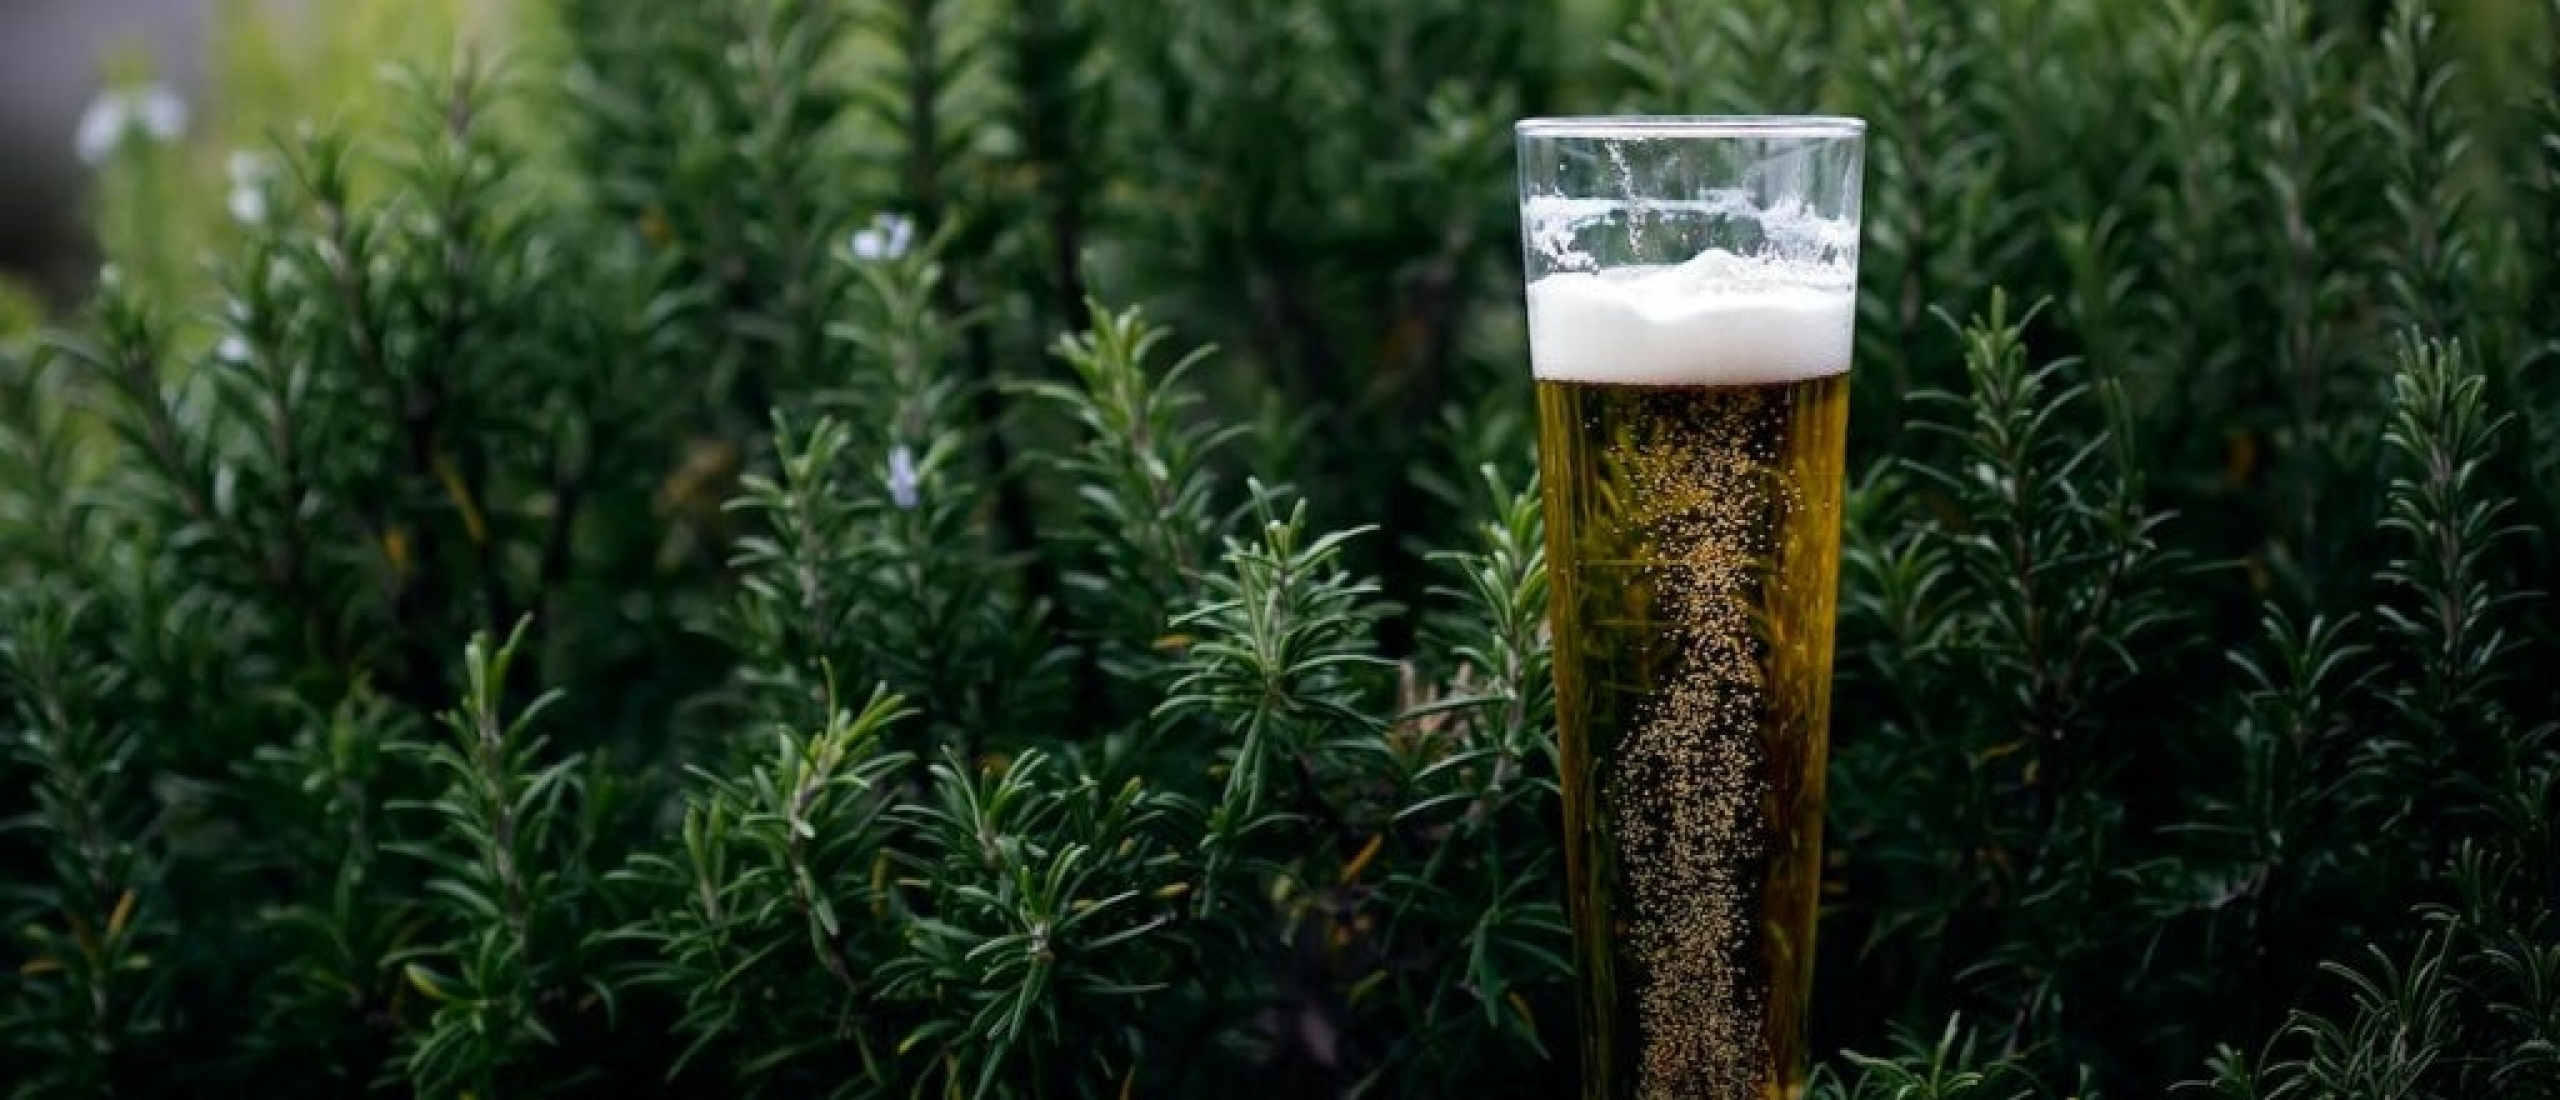 Het nut van bierglazen: welk glas voor welk bier?